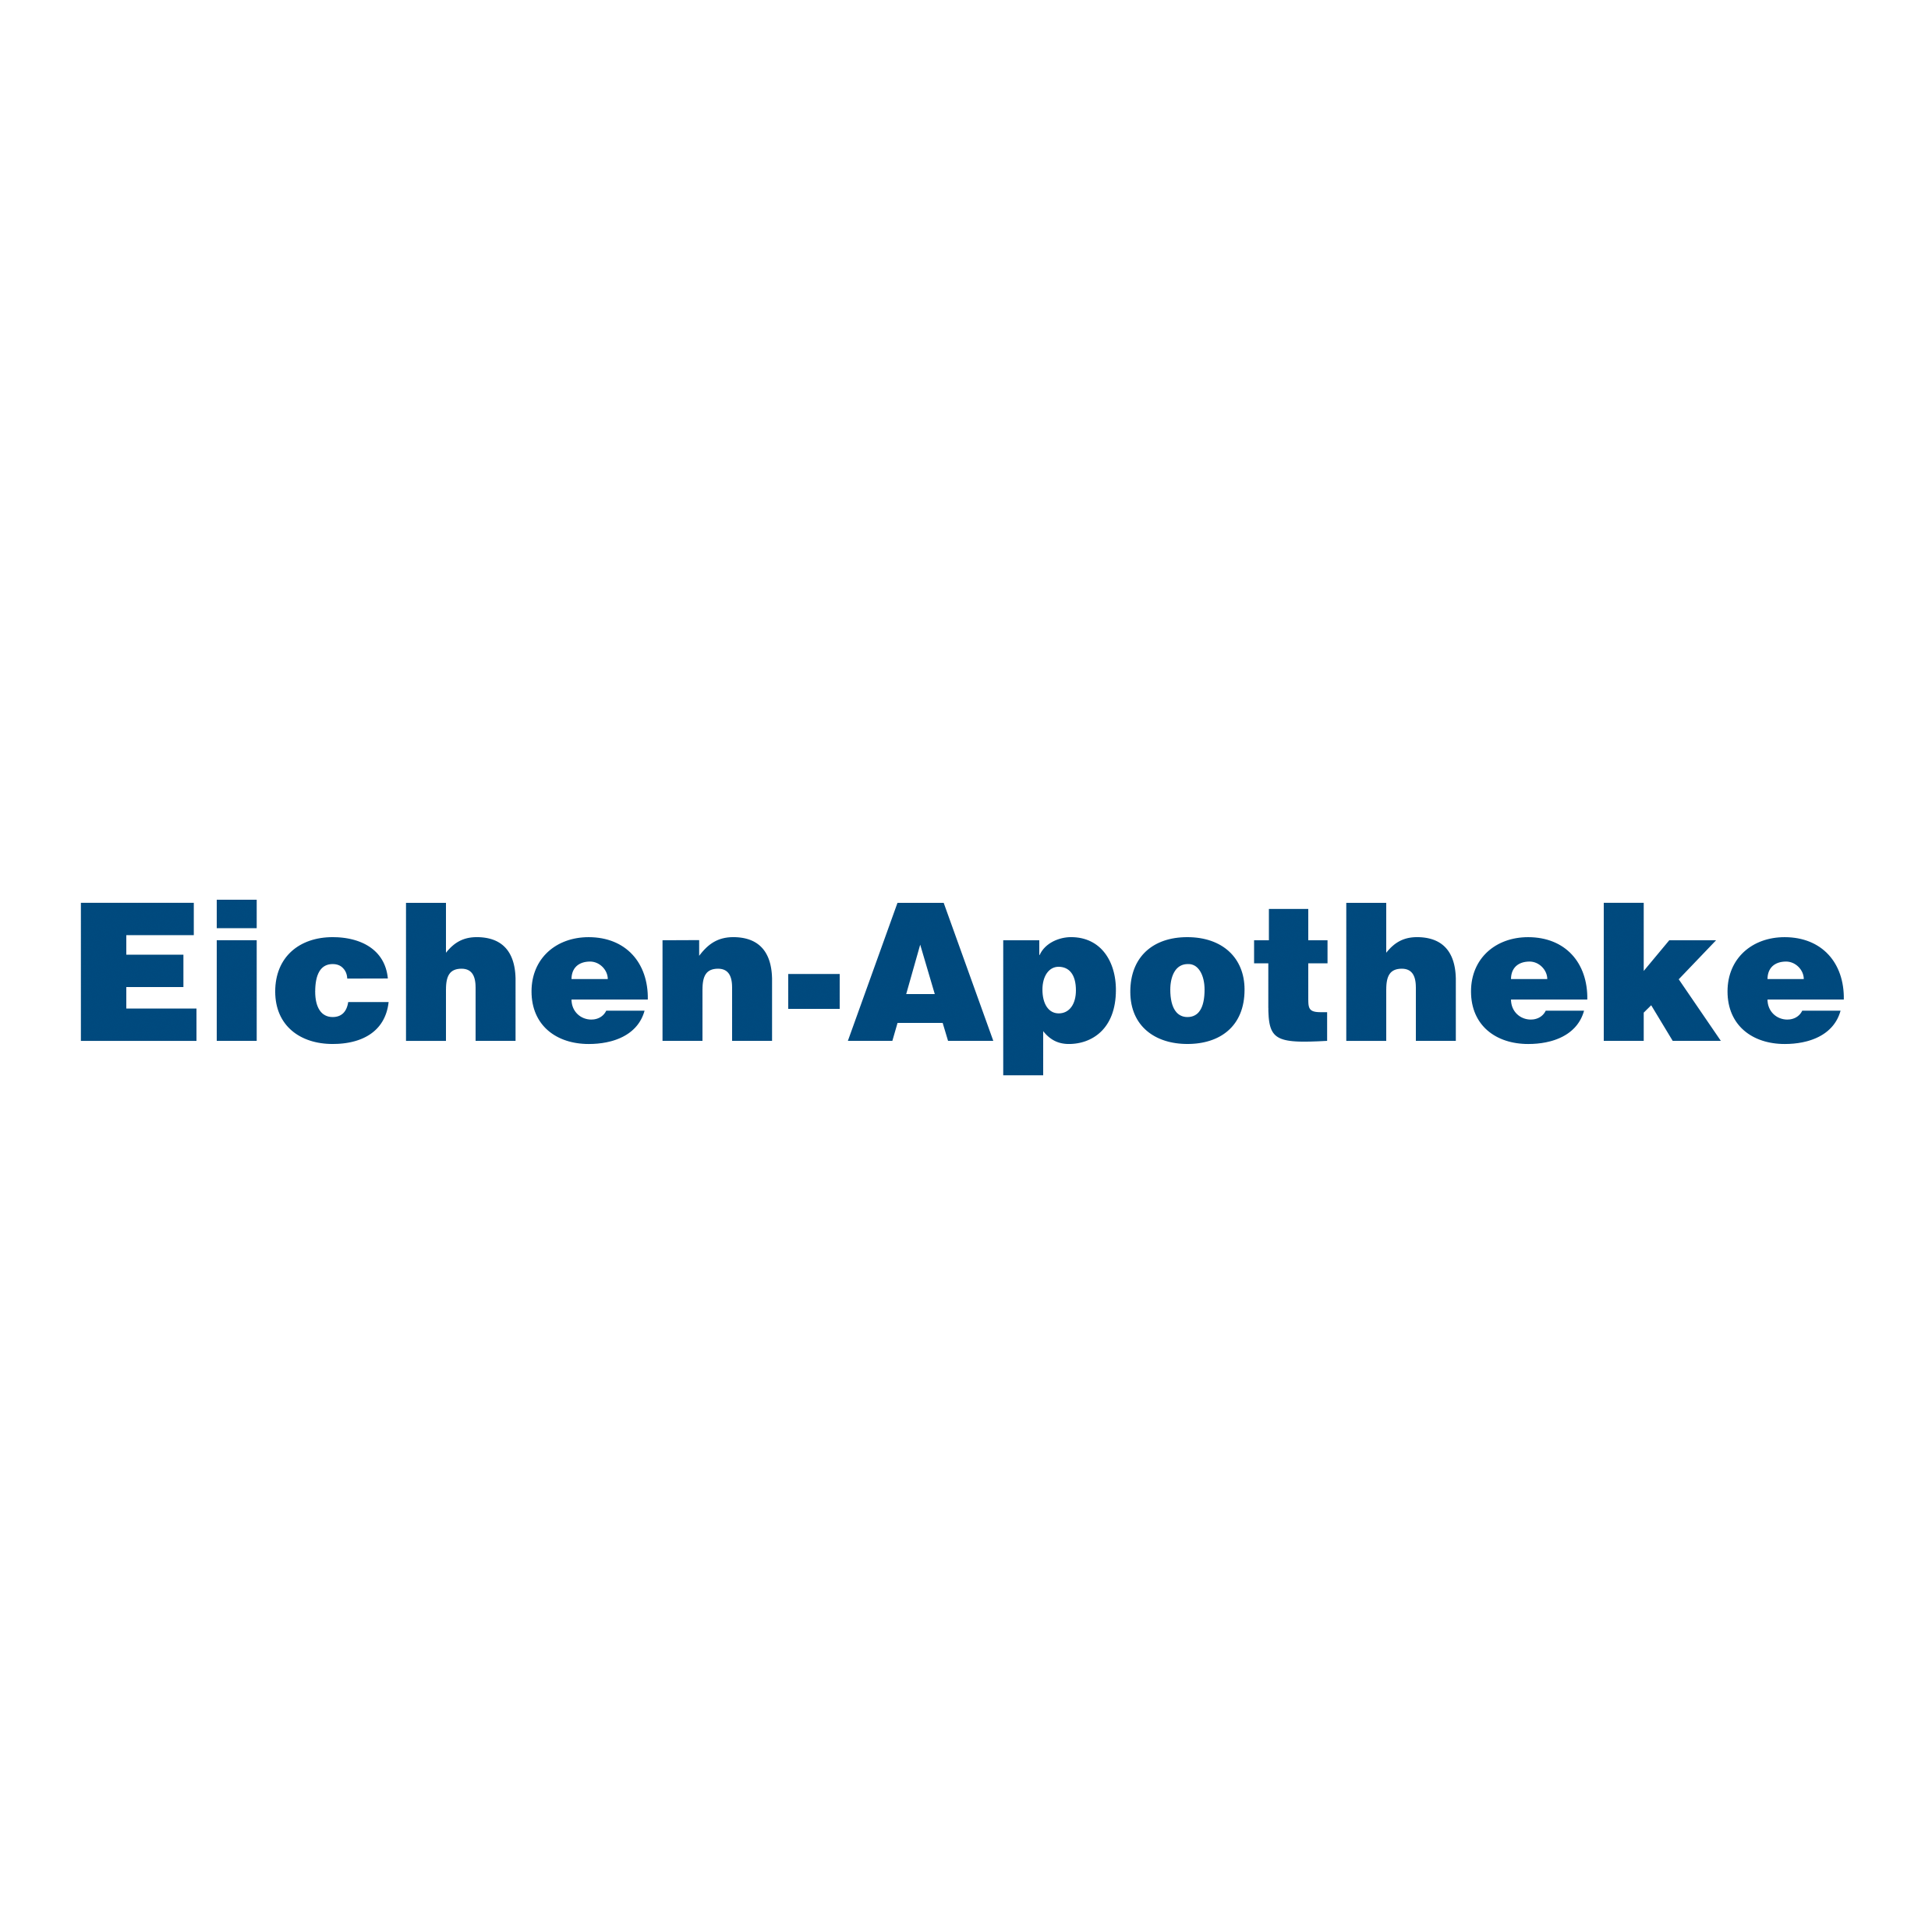 Eichen Apotheke in Norderstedt - Logo